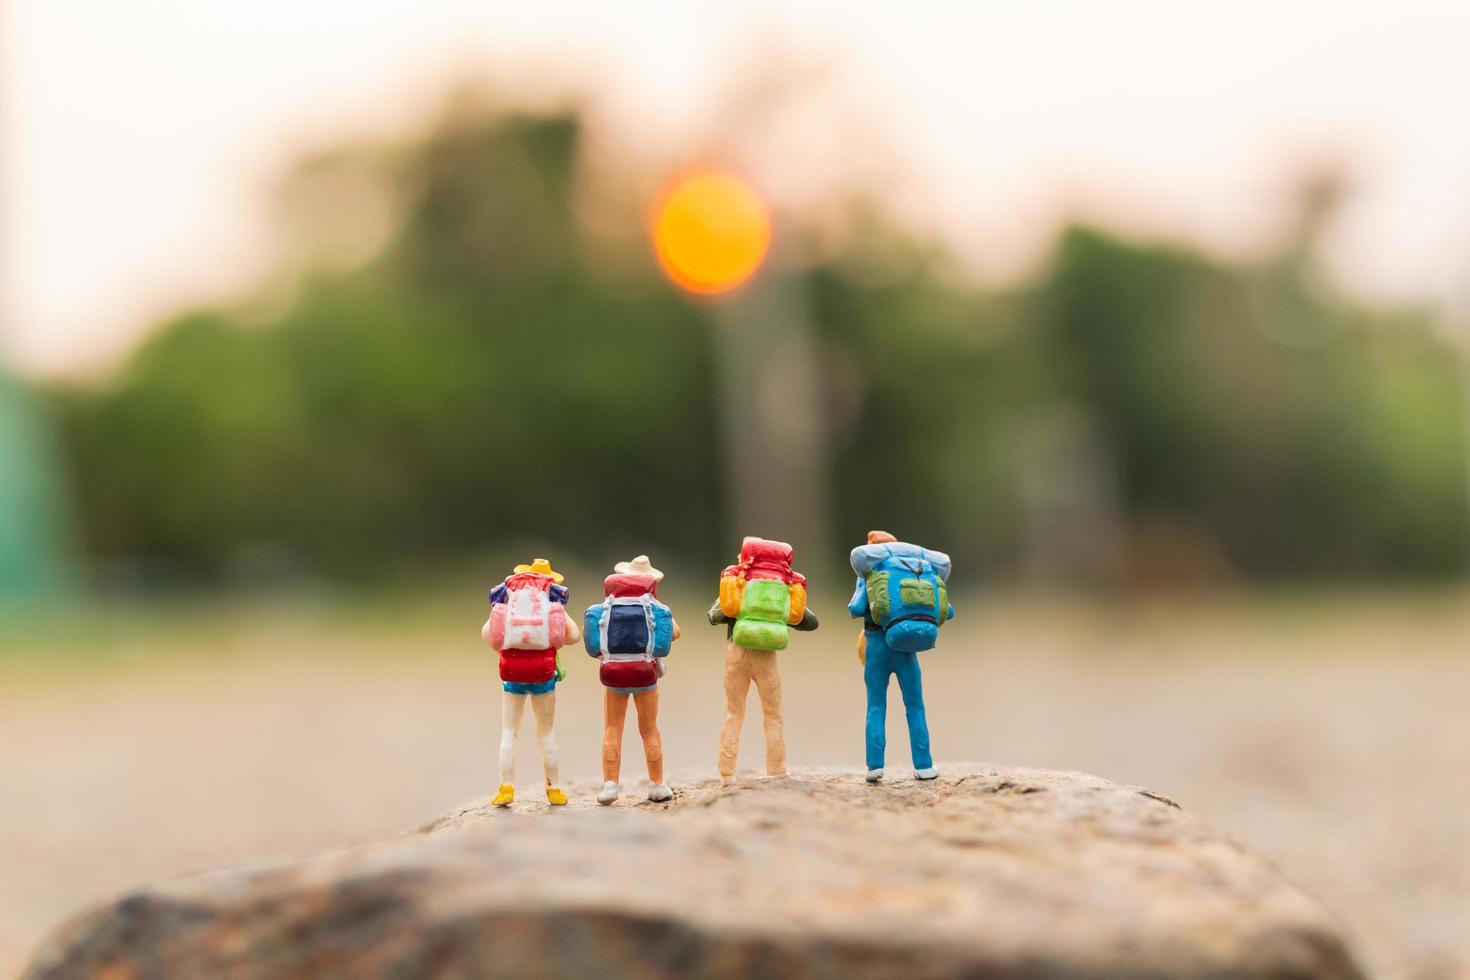 viajantes em miniatura com mochilas caminhando sobre uma rocha, conceito de viagem e aventura foto